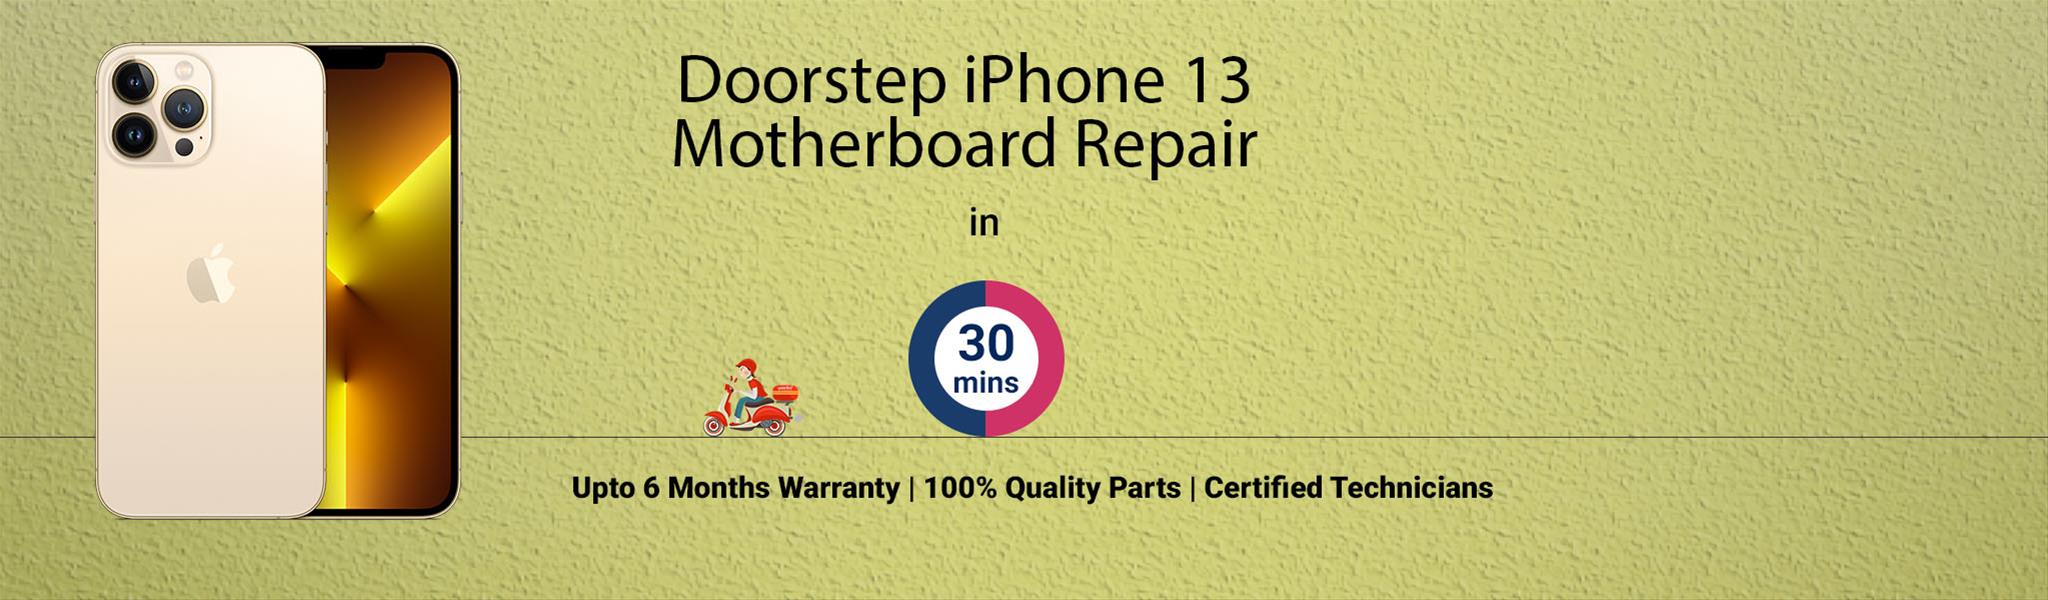 iphone-13-pro-motherboard-repair.jpg